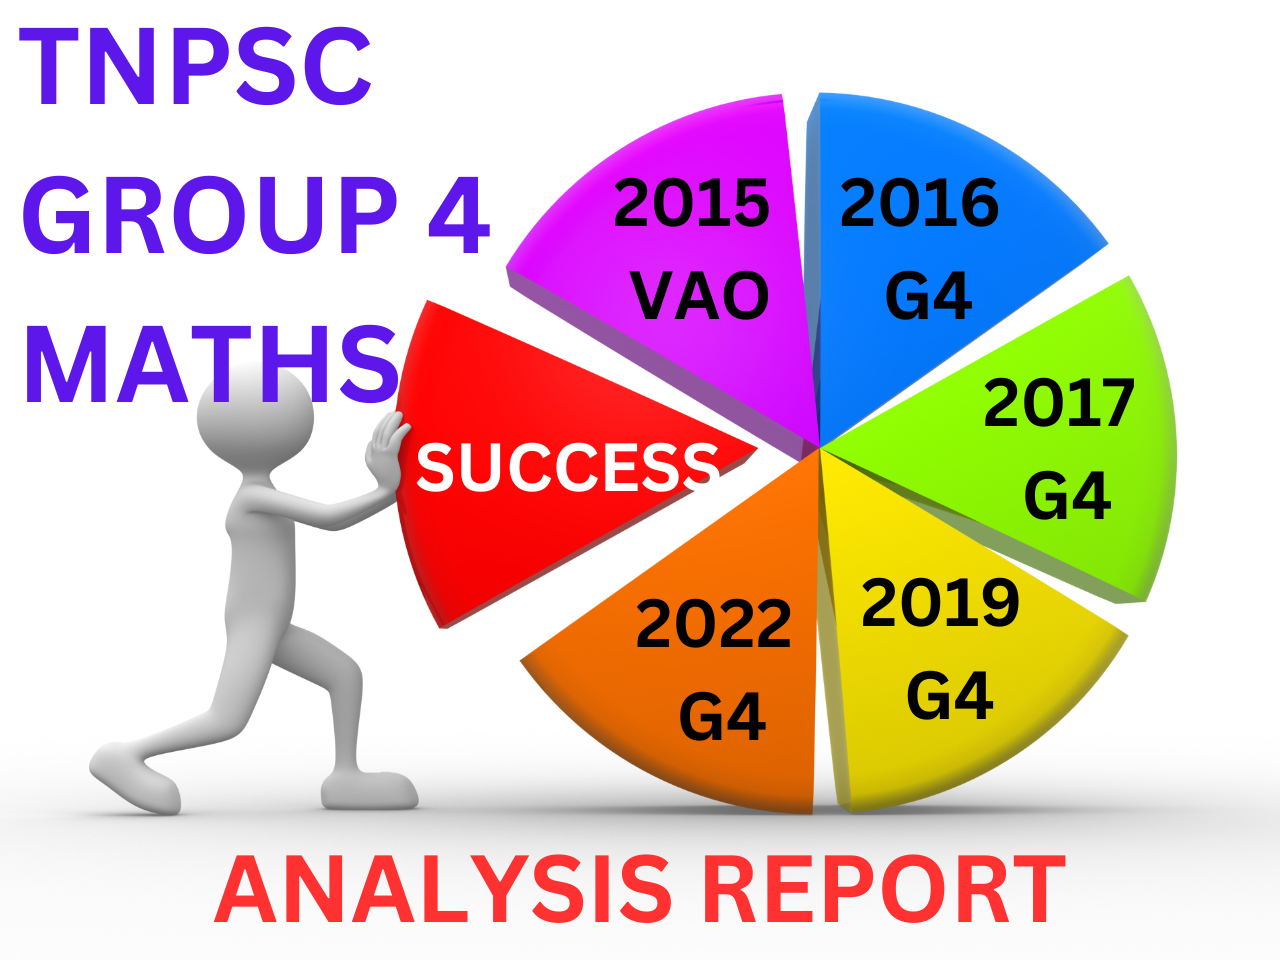 tnpsc group 4 maths